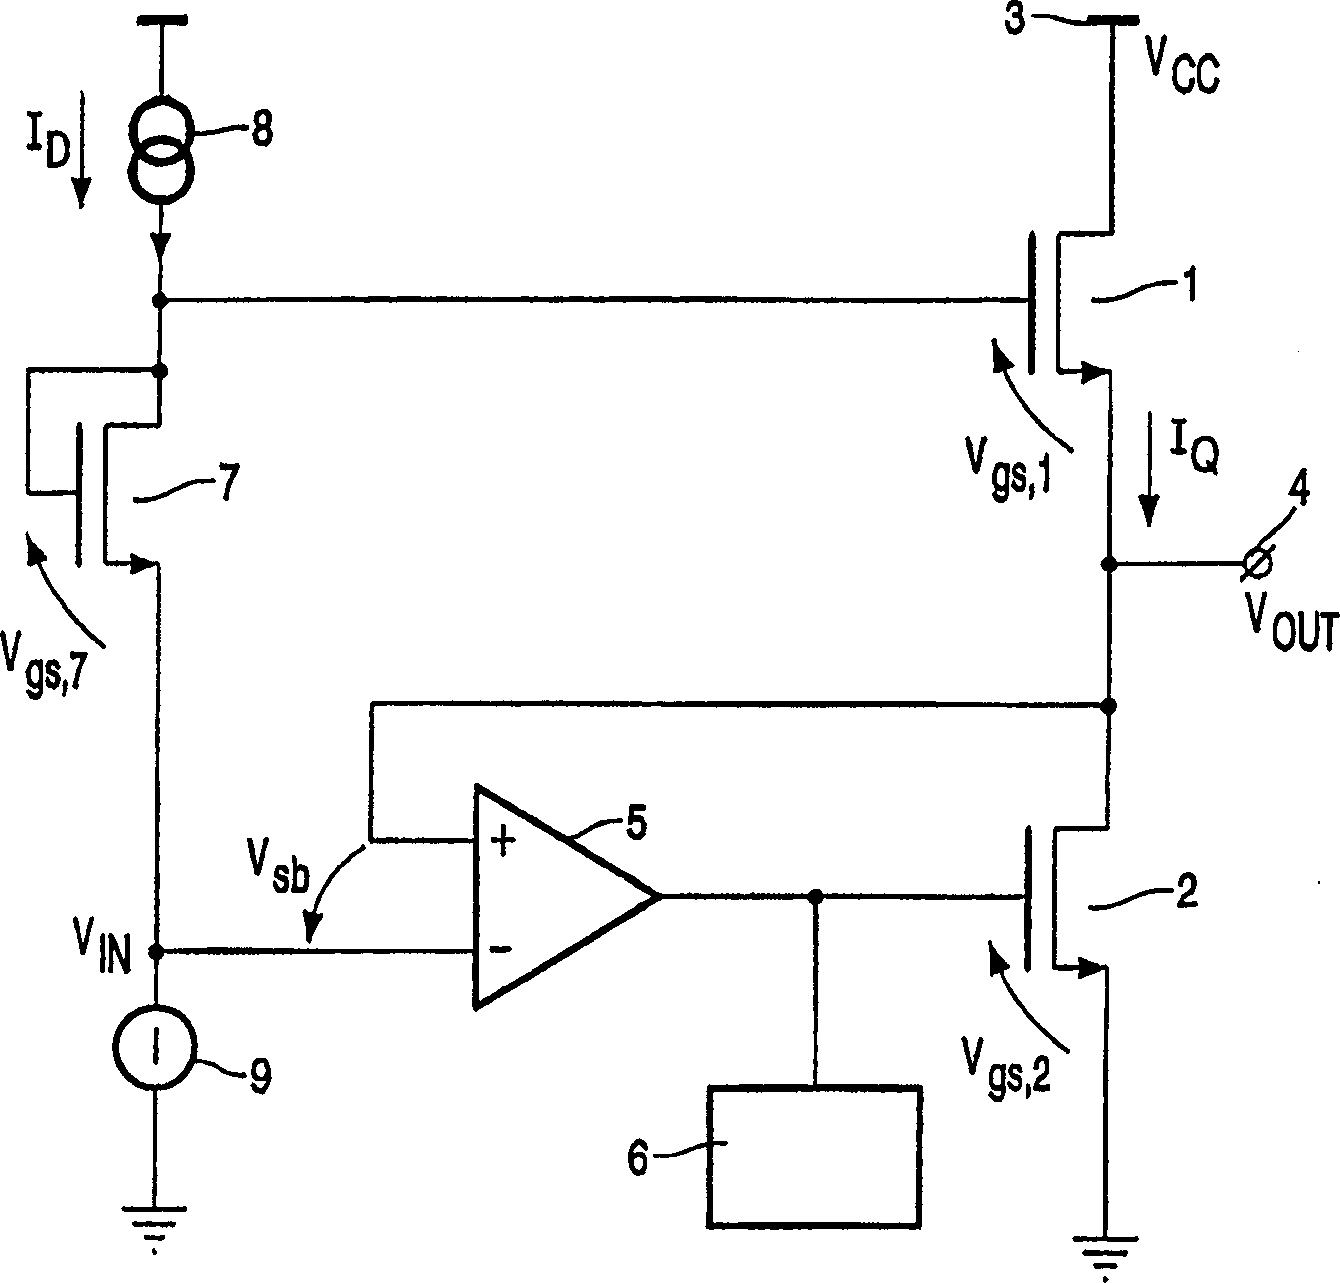 Power amplifier module